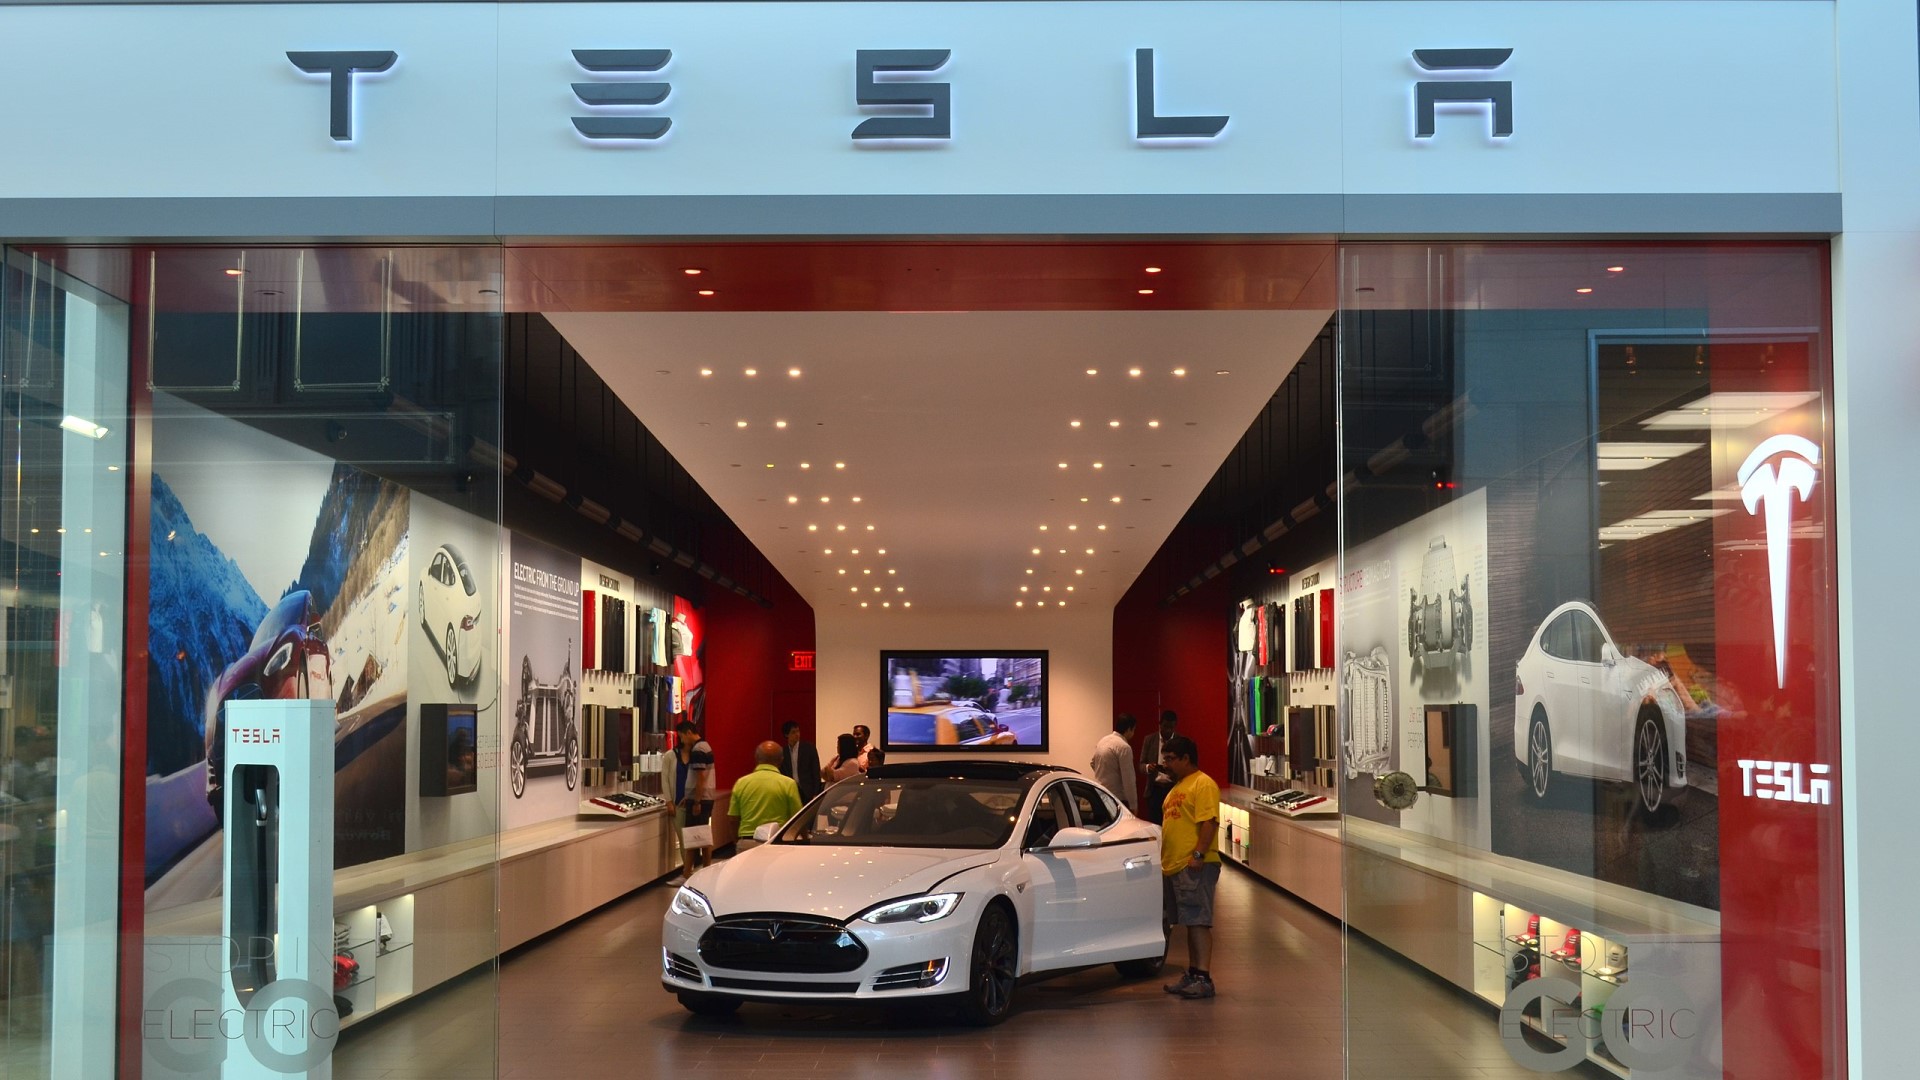 Tesla ทำสถิติขายรถยนต์ที่ผลิตในจีนเดือน ธ.ค. ได้ 70,847 คัน